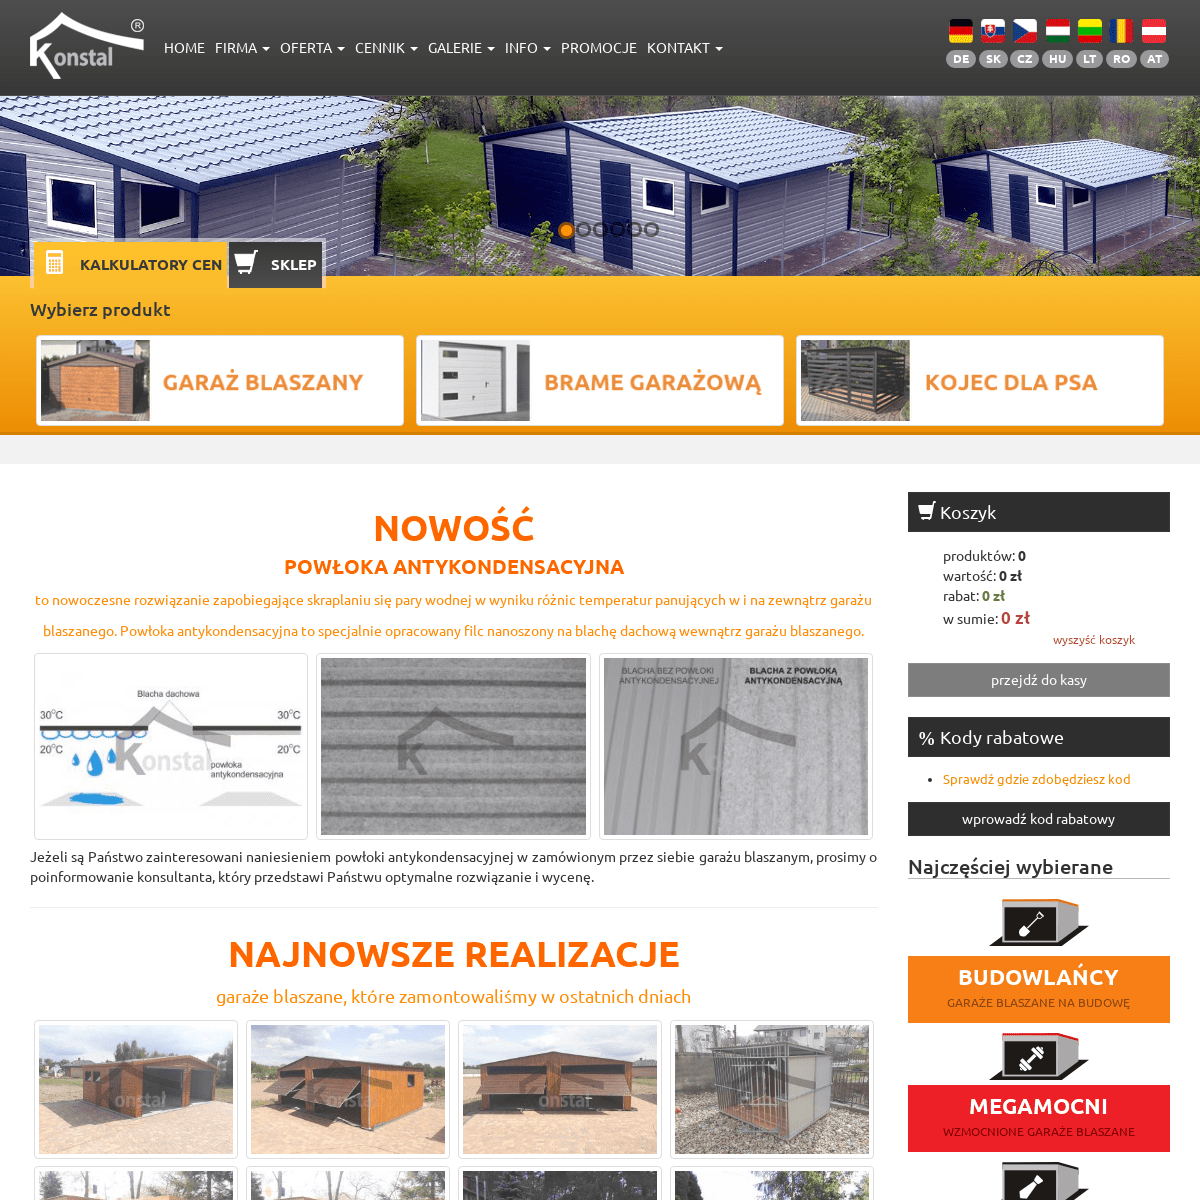 A complete backup of konstal-garaze.pl